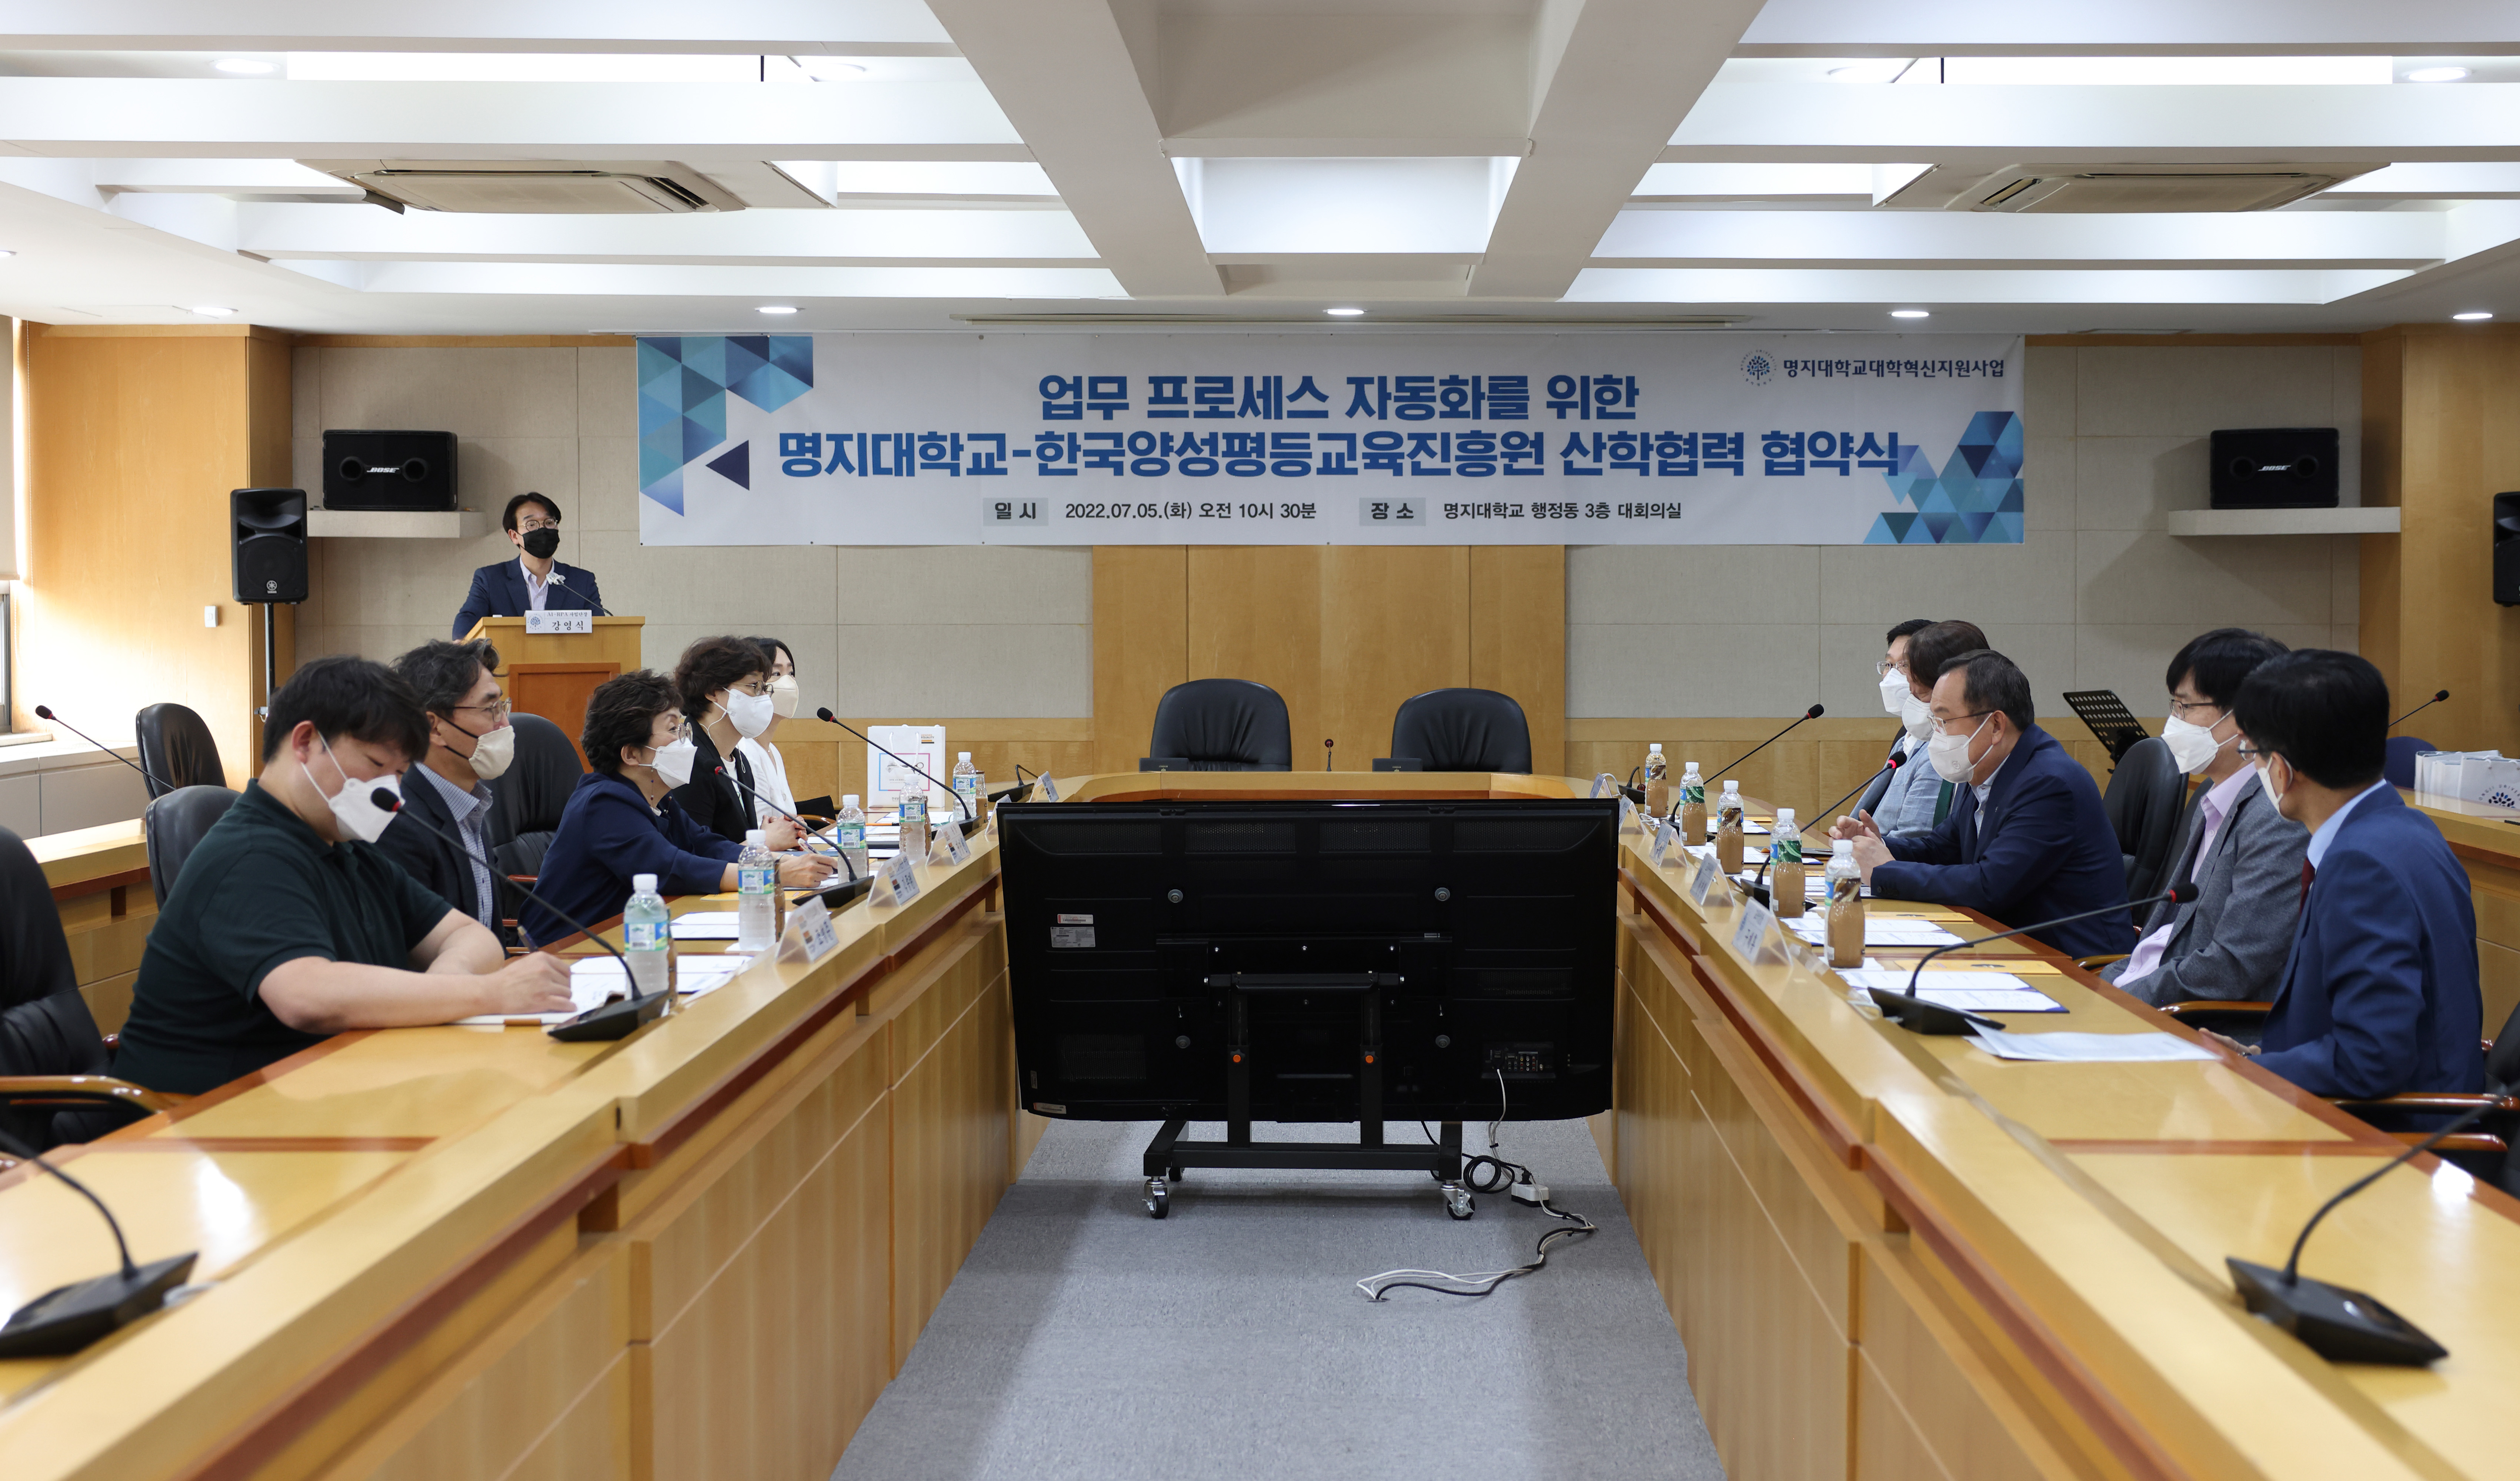 한국양성평등교육진흥원과 ‘RPA 기반 업무 프로세스 자동화 도입’ 협약(MOU) 체결 대표이미지